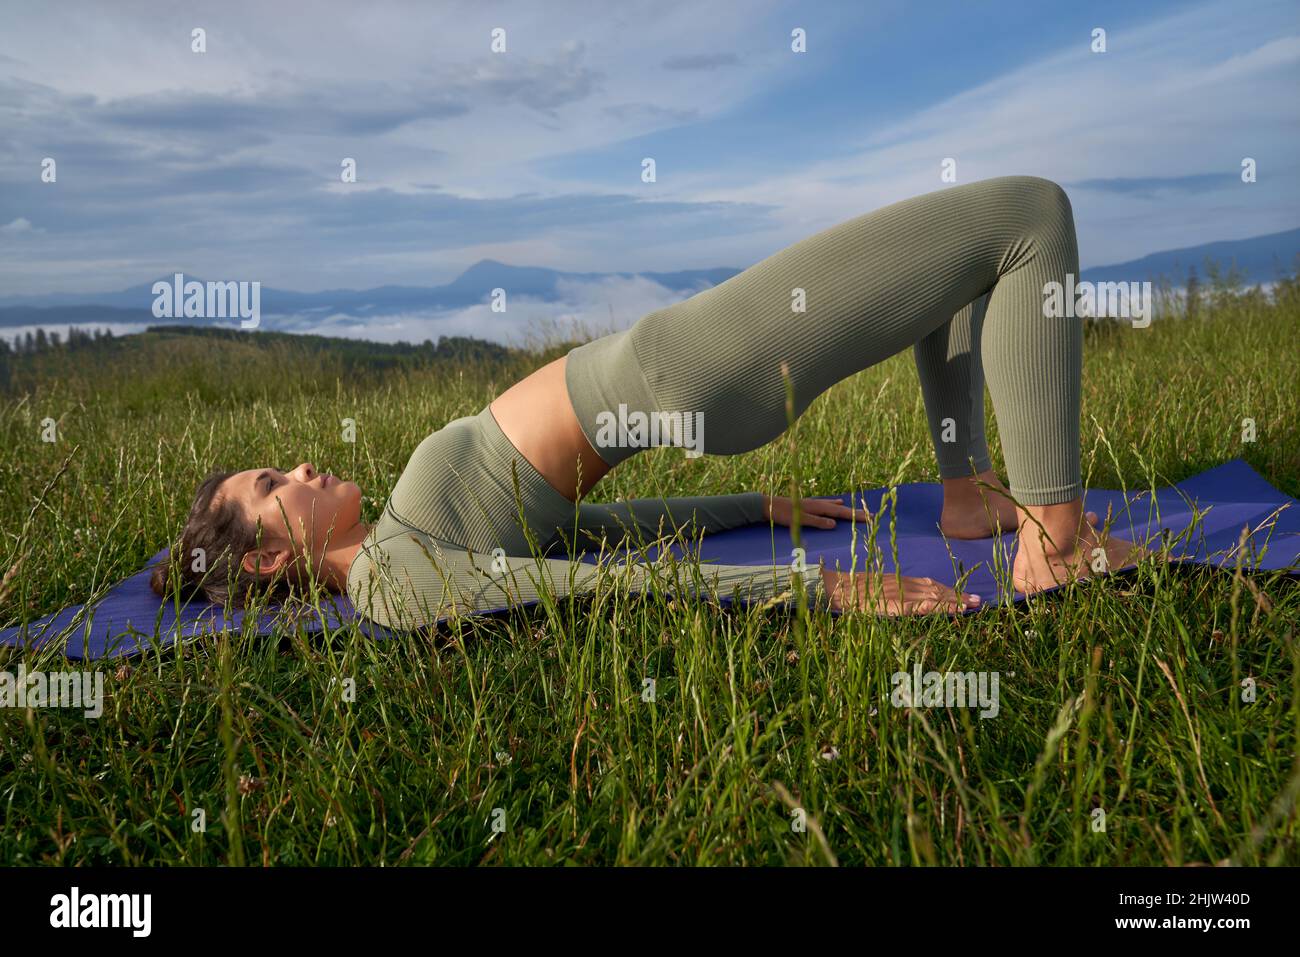 Schöne junge Frau mit schlankem Körper verbringen Freizeit für Outdoor-Training. Eine gesunde, fliegende Dame liegt auf einer Yogamatte und macht Übungen für den Rücken. Stockfoto